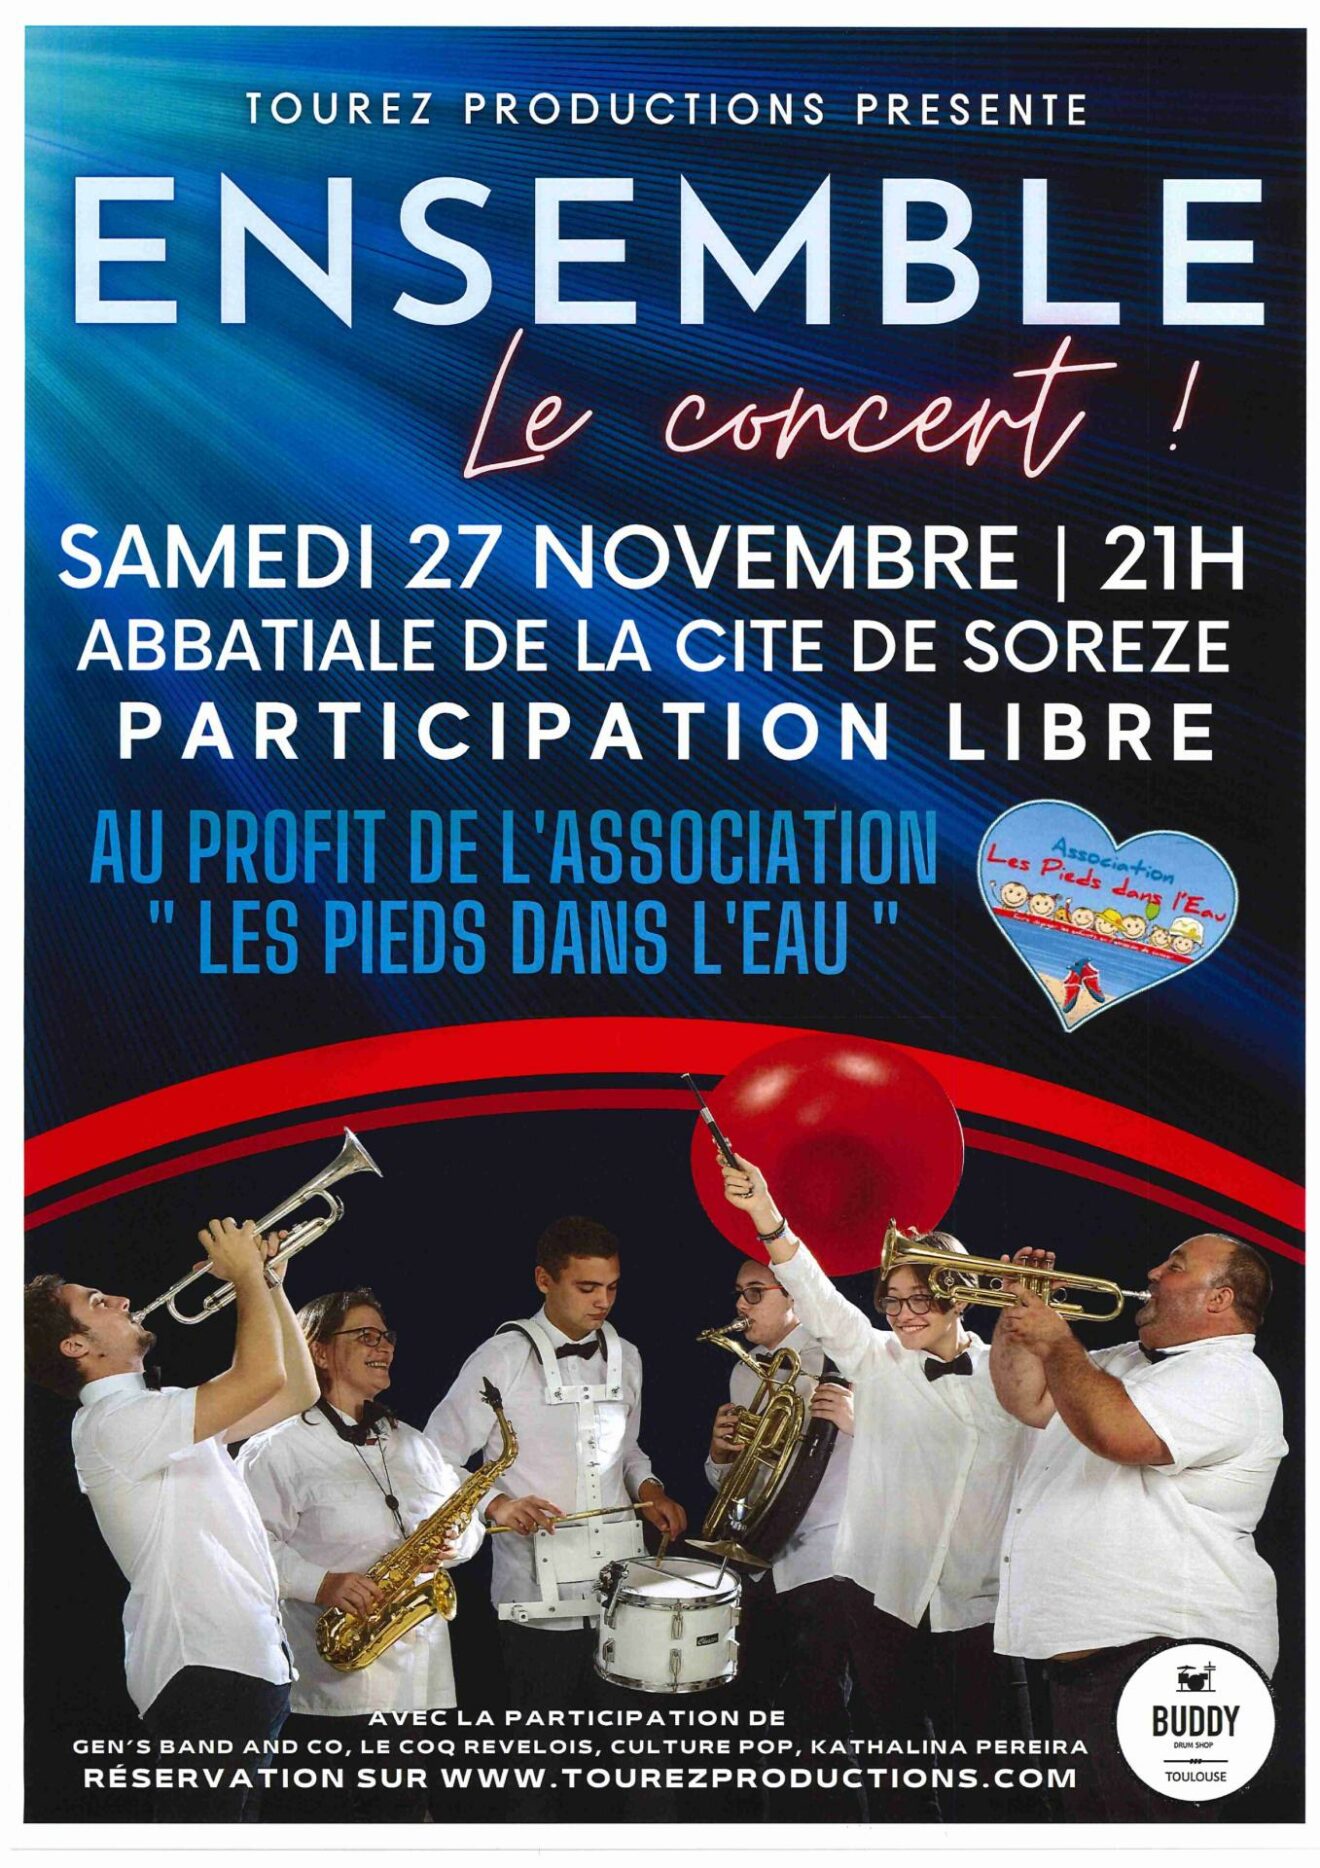 ENSEMBLE Le concert !